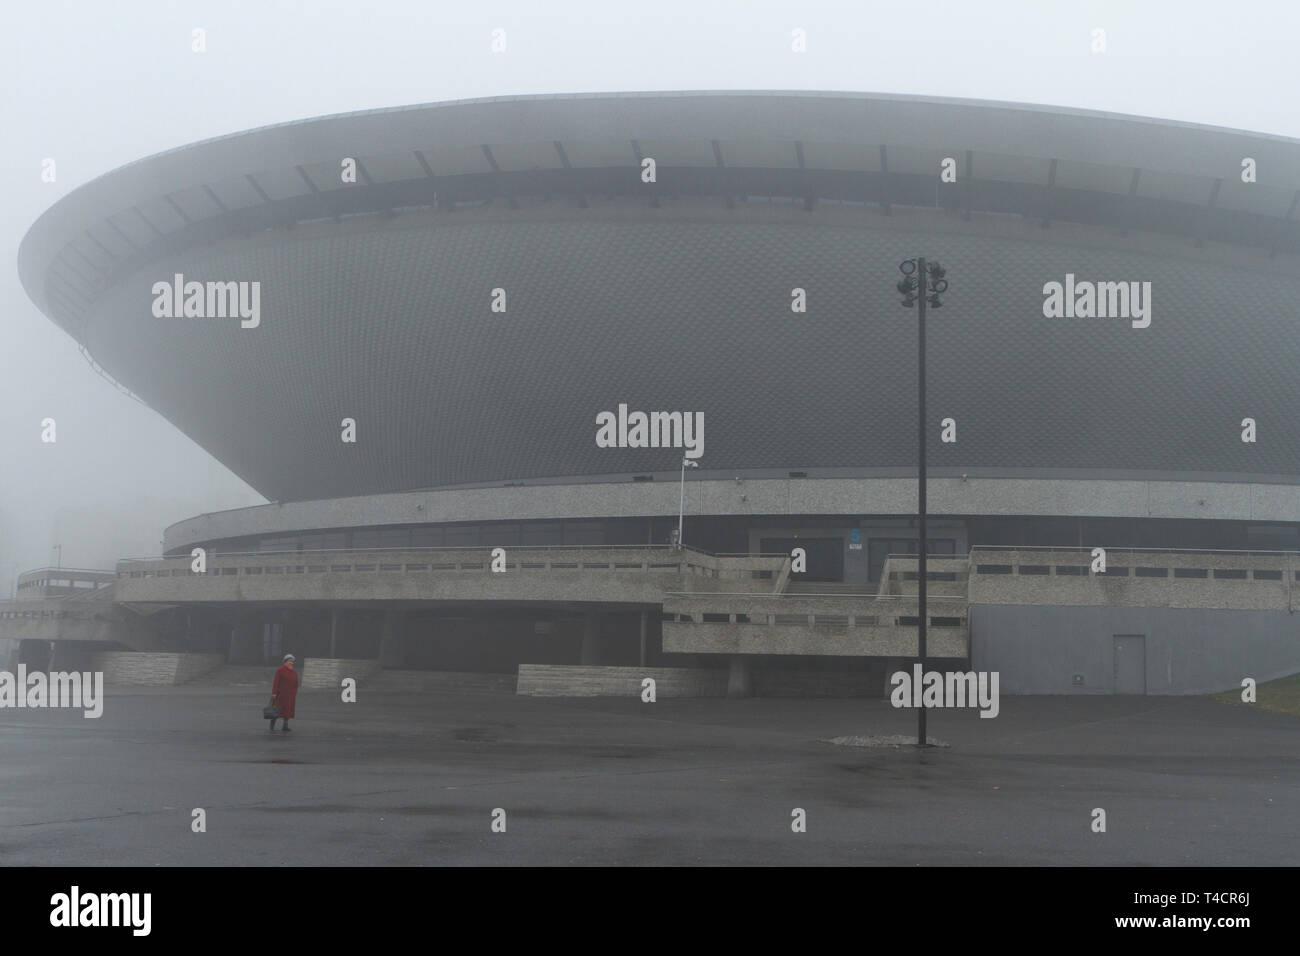 'Spodek' - sport and entertainment arena in Katowice, Poland. Stock Photo